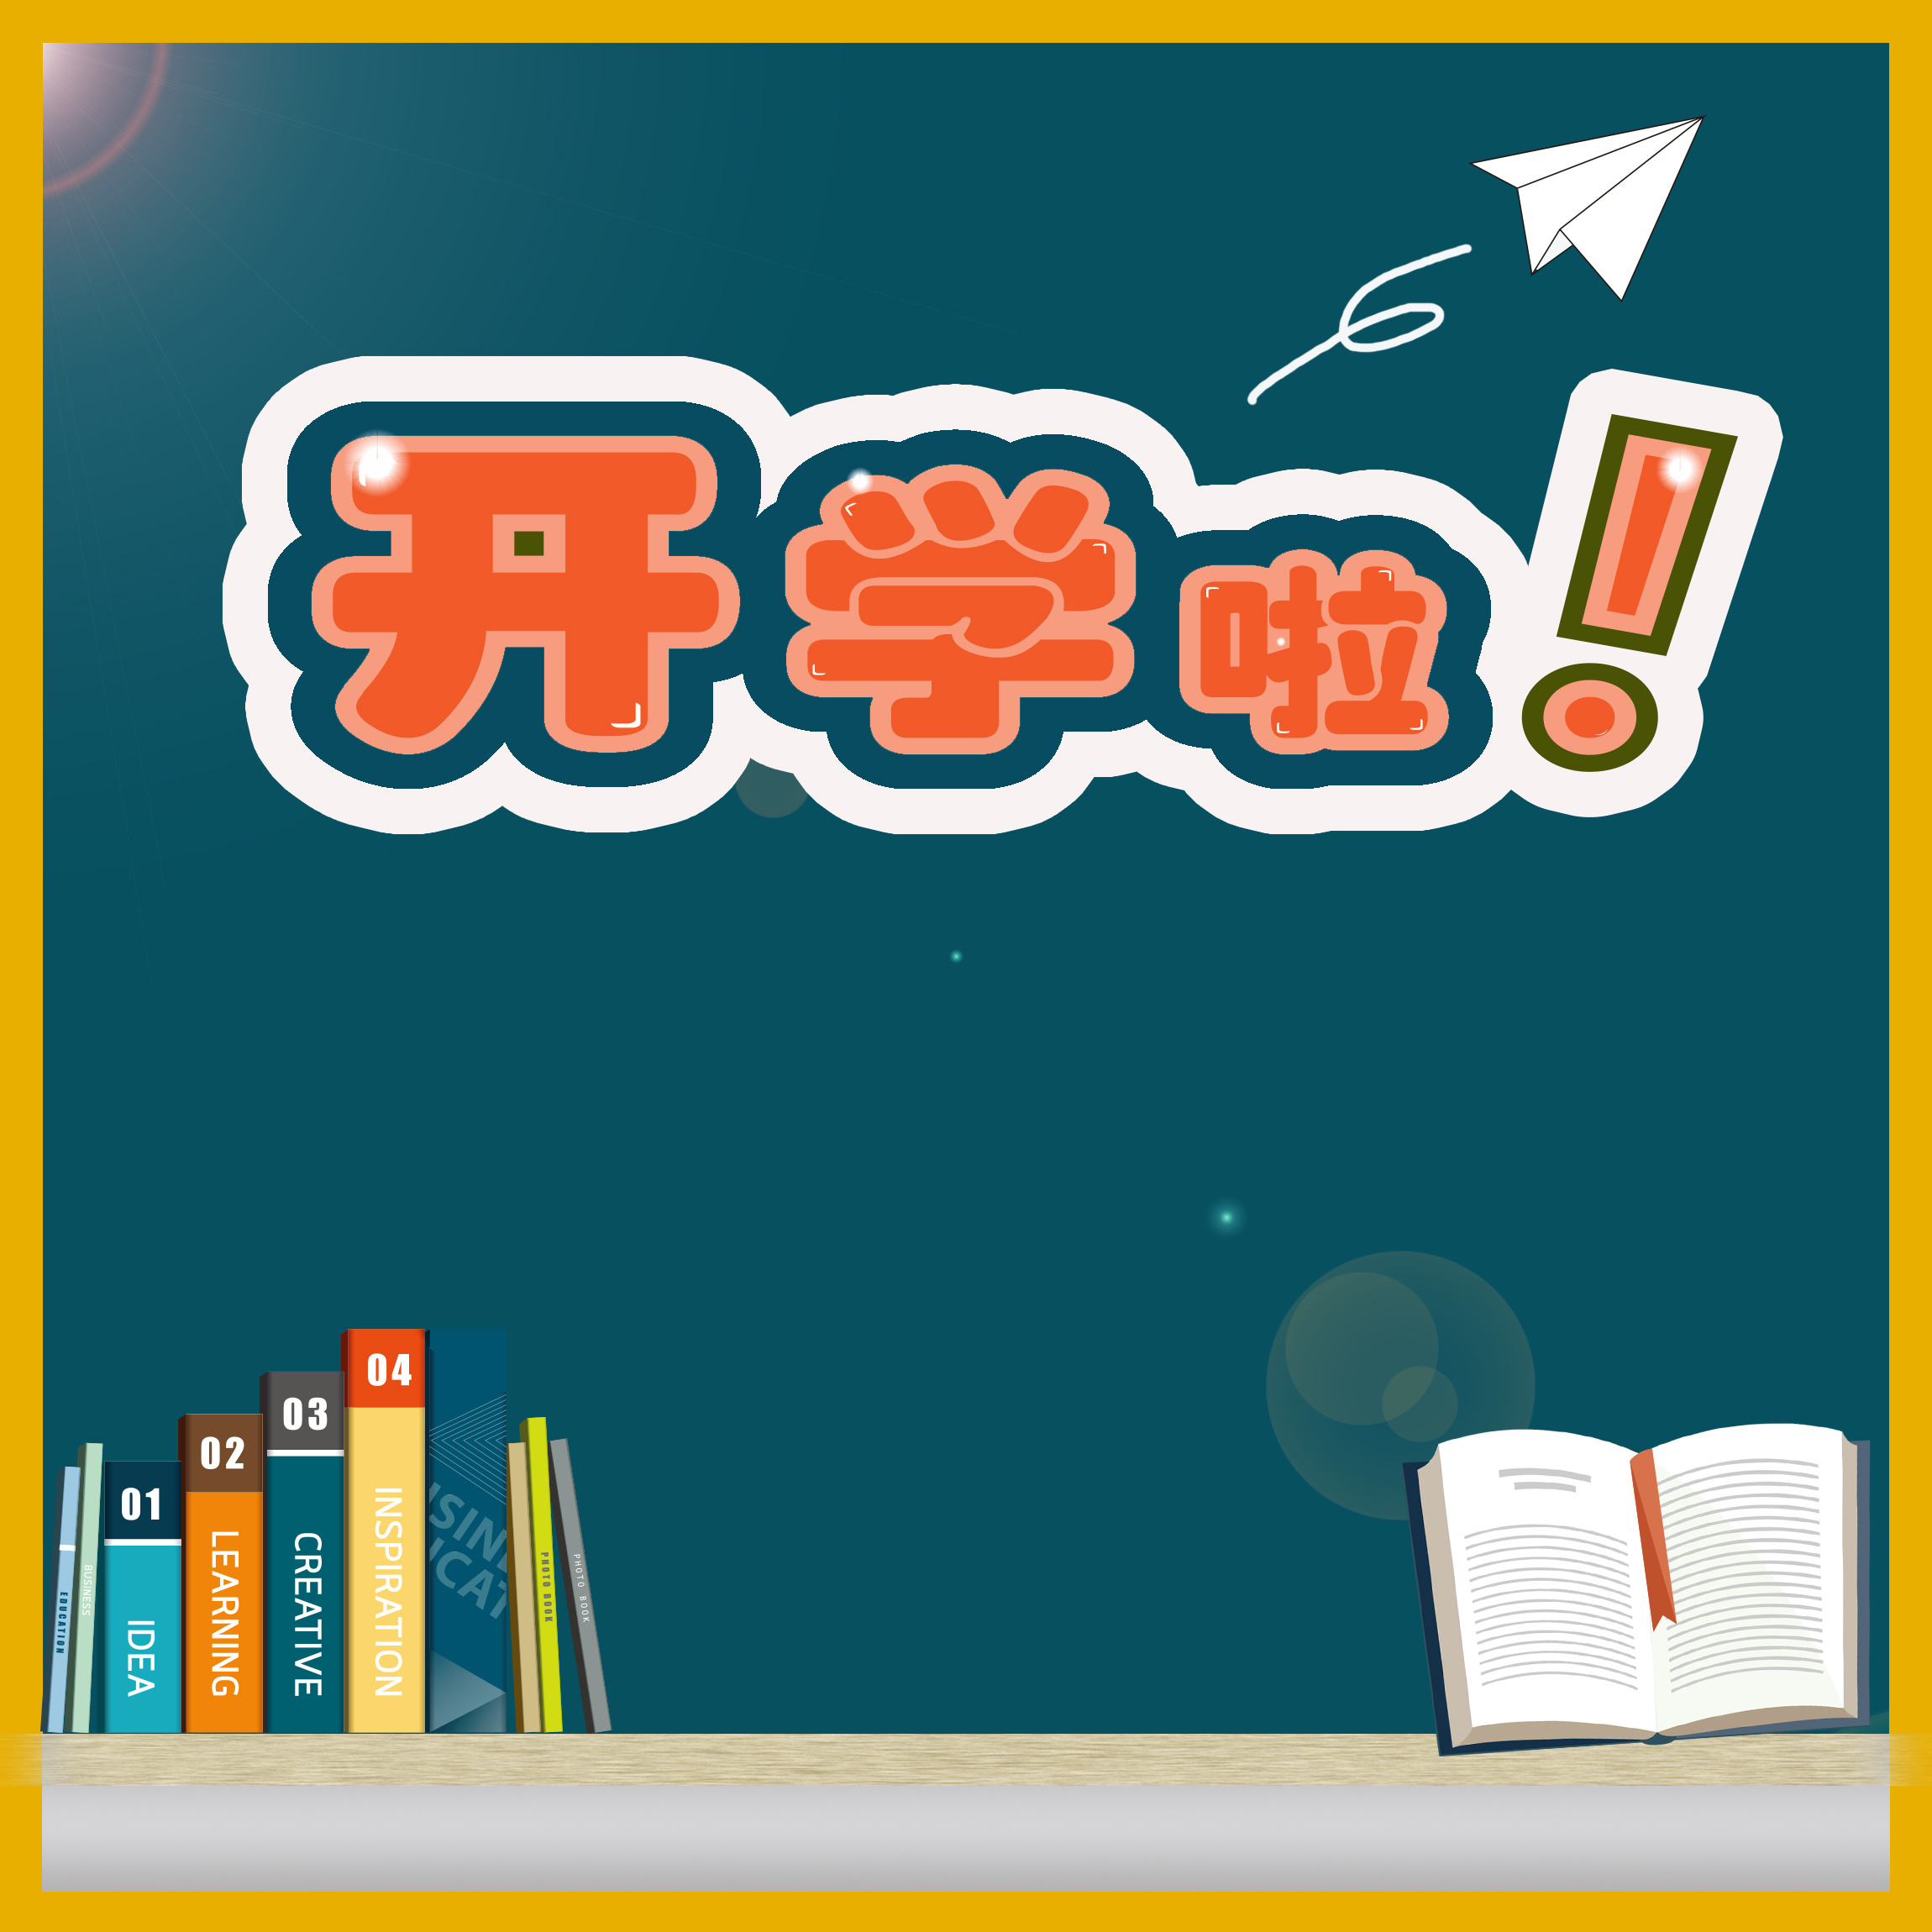 蓝绿色开学季完整插画手绘开学季节日分享中文海报 - 模板 - Canva可画